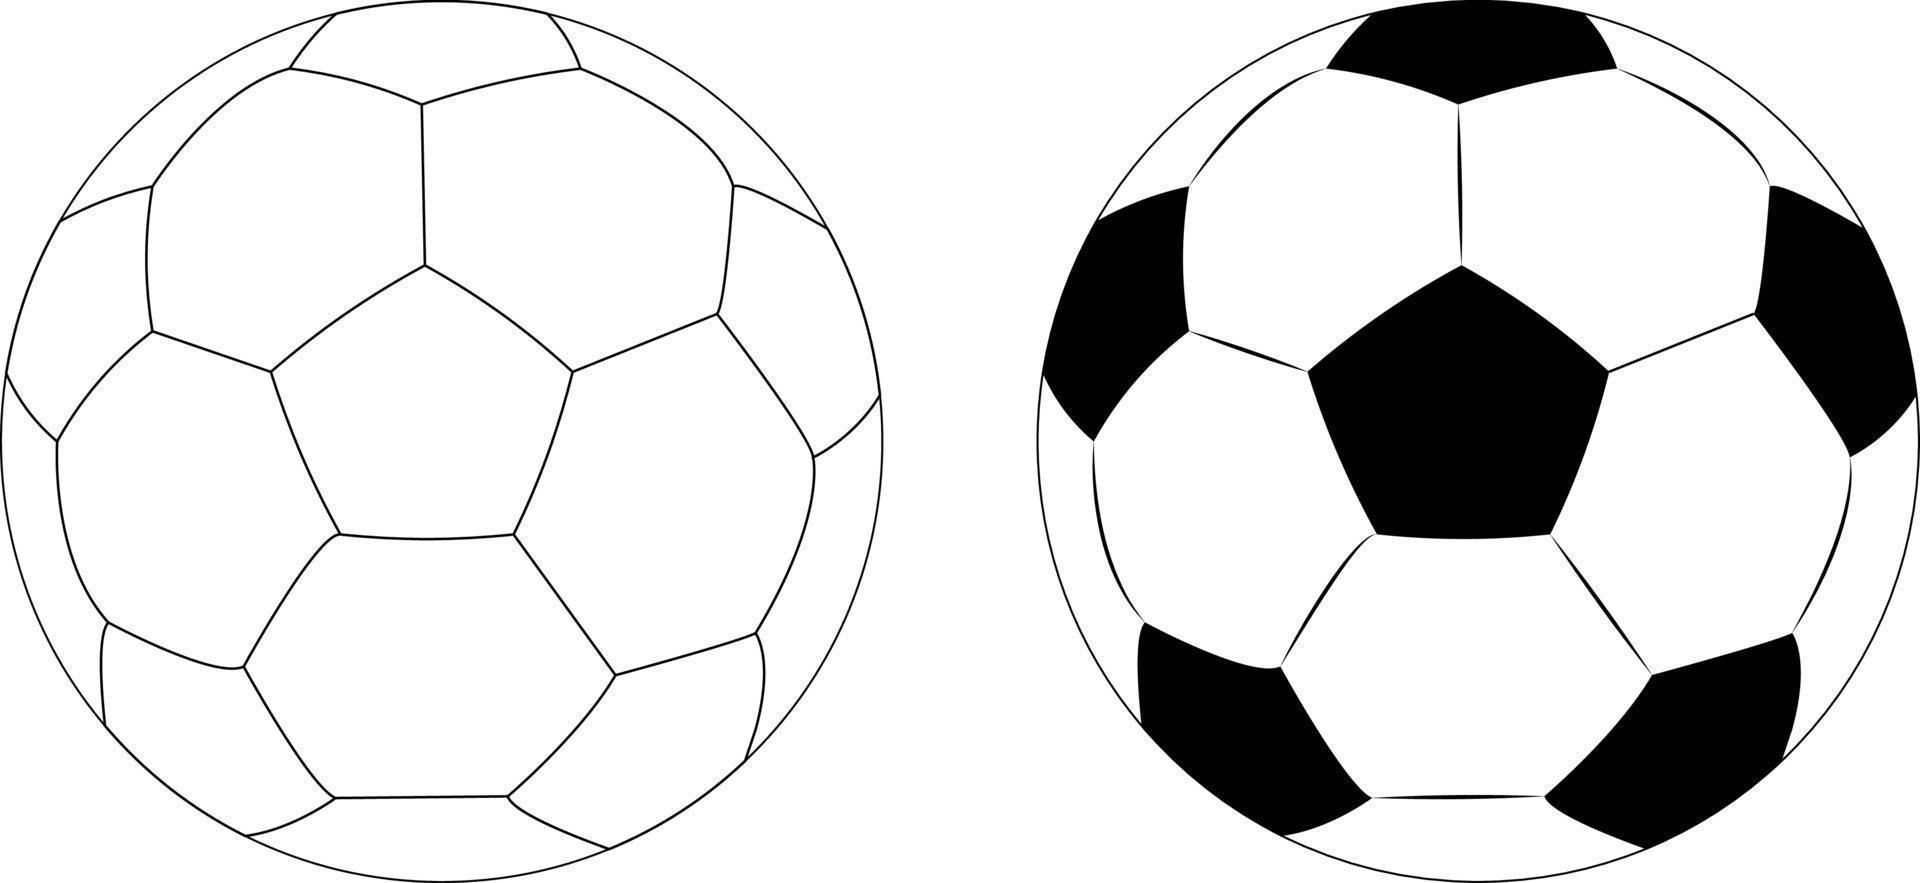 iconos de pelota de fútbol en dos estilos, deporte de fútbol para competición. objeto de jugador profesional. ilustración vectorial realista aislada sobre fondo blanco transparente. vector